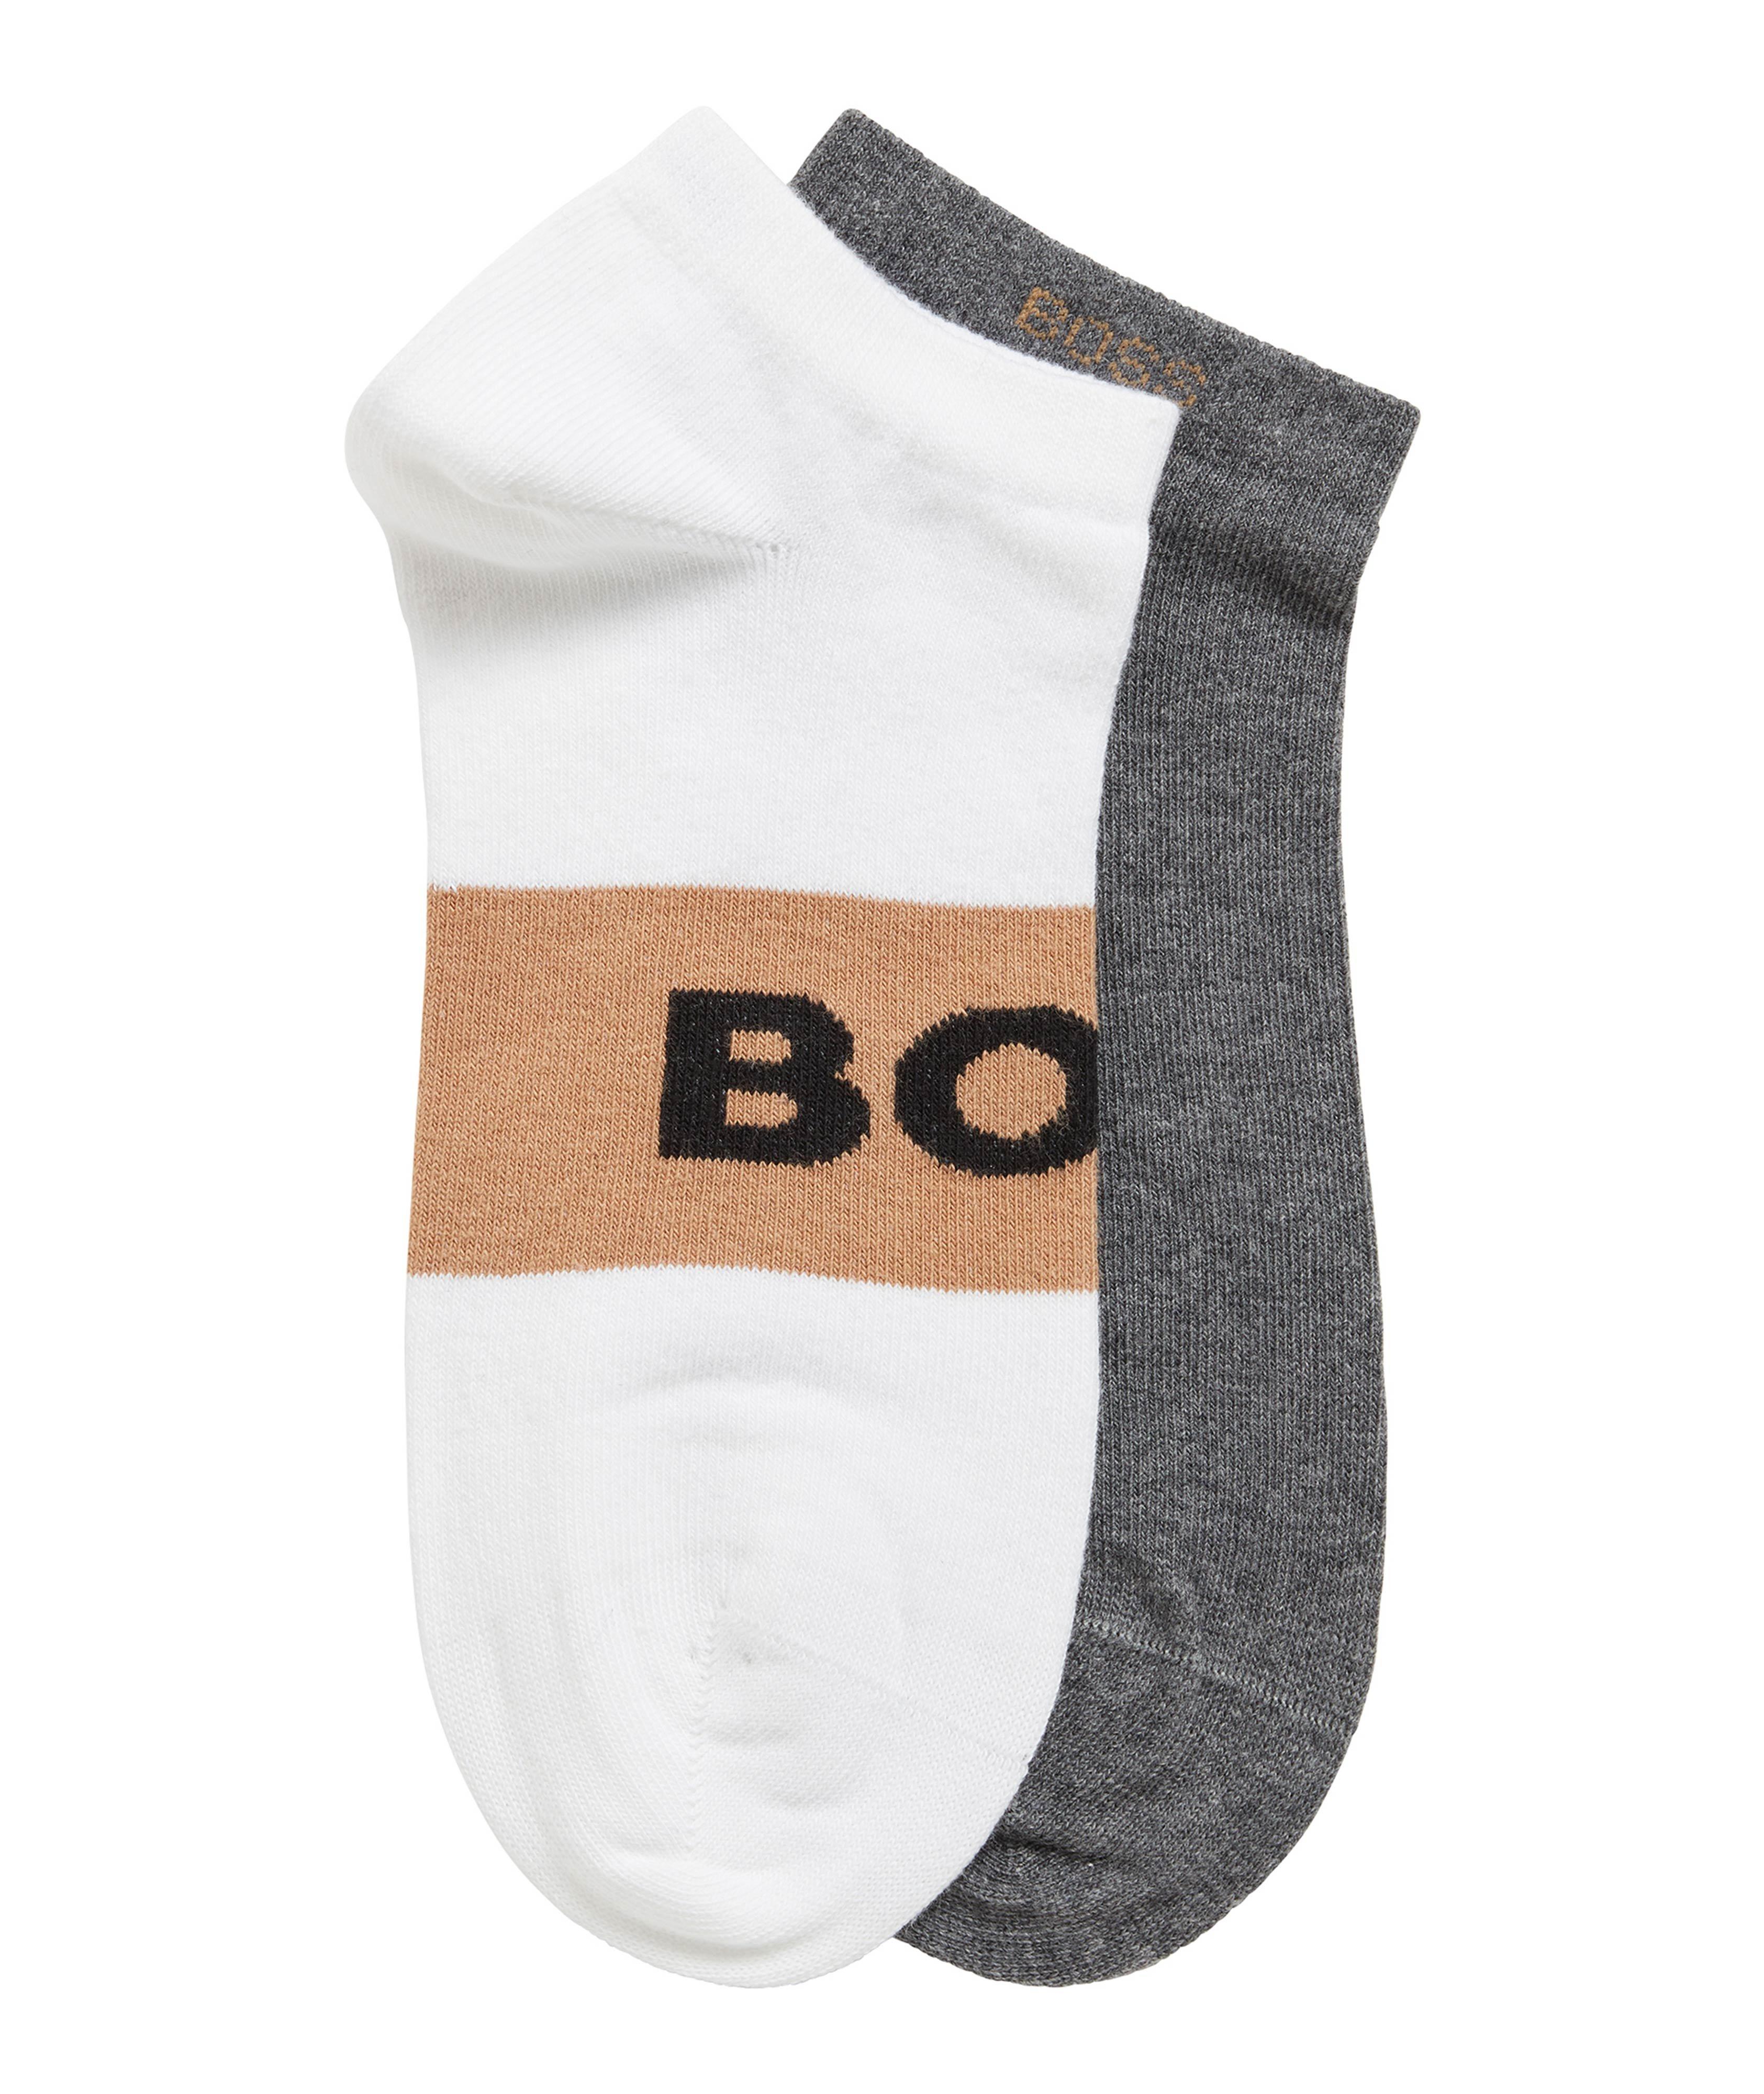 2-Pack Cotton-Blend Ankle Socks image 0